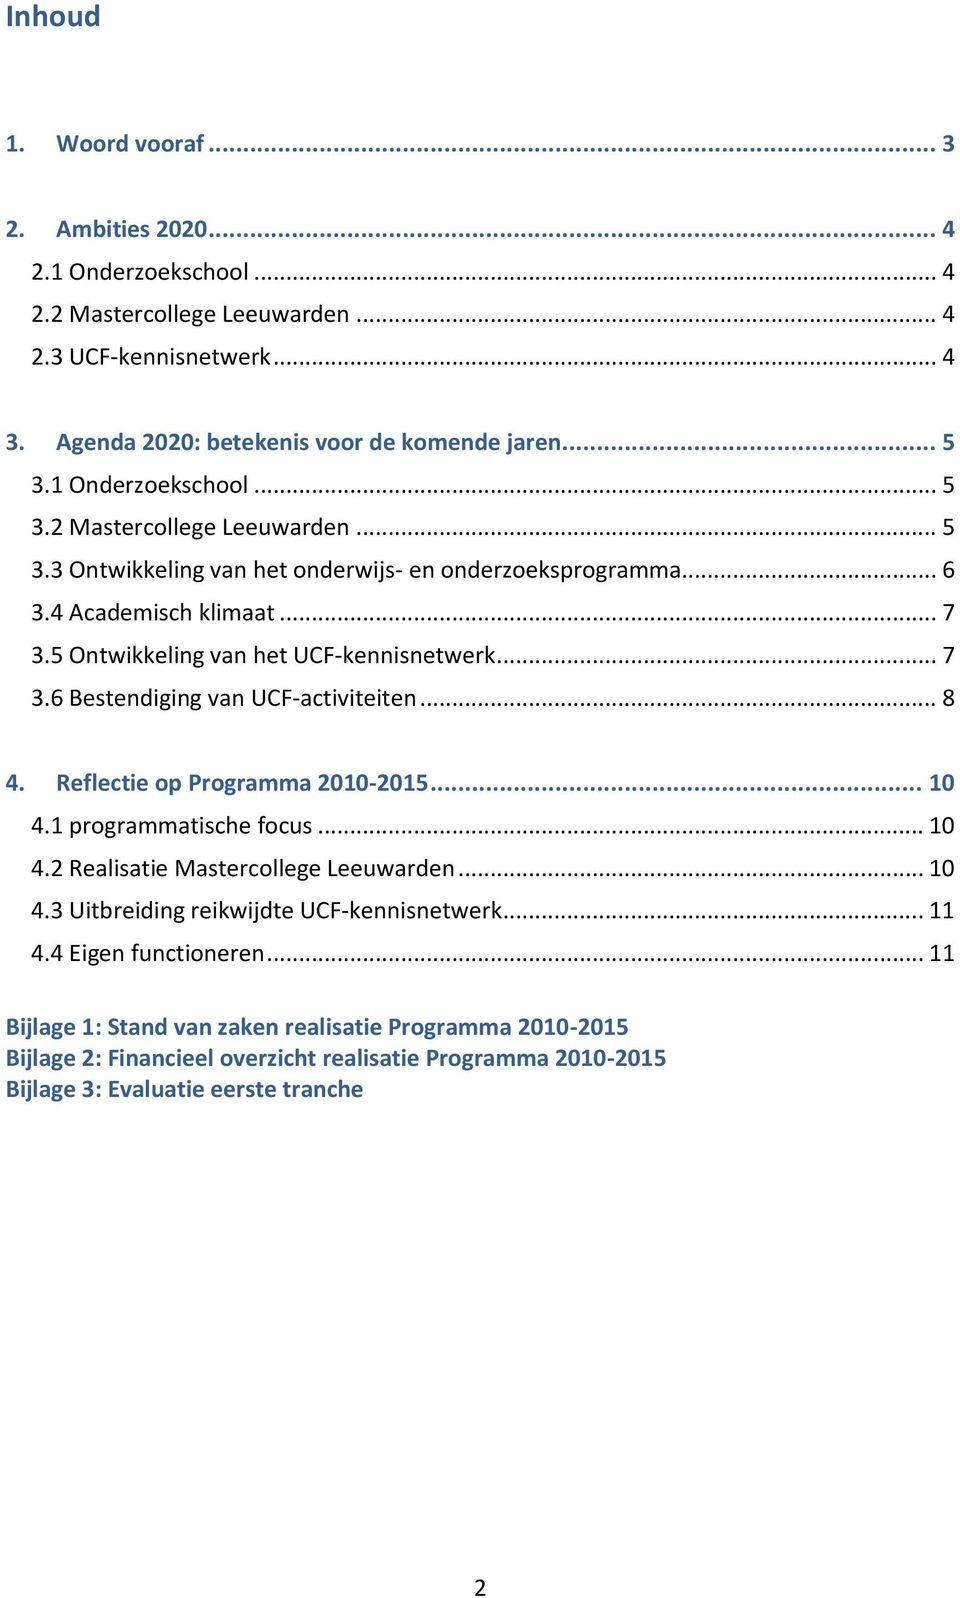 .. 8 4. Reflectie op Programma 2010-2015... 10 4.1 programmatische focus... 10 4.2 Realisatie Mastercollege Leeuwarden... 10 4.3 Uitbreiding reikwijdte UCF-kennisnetwerk... 11 4.